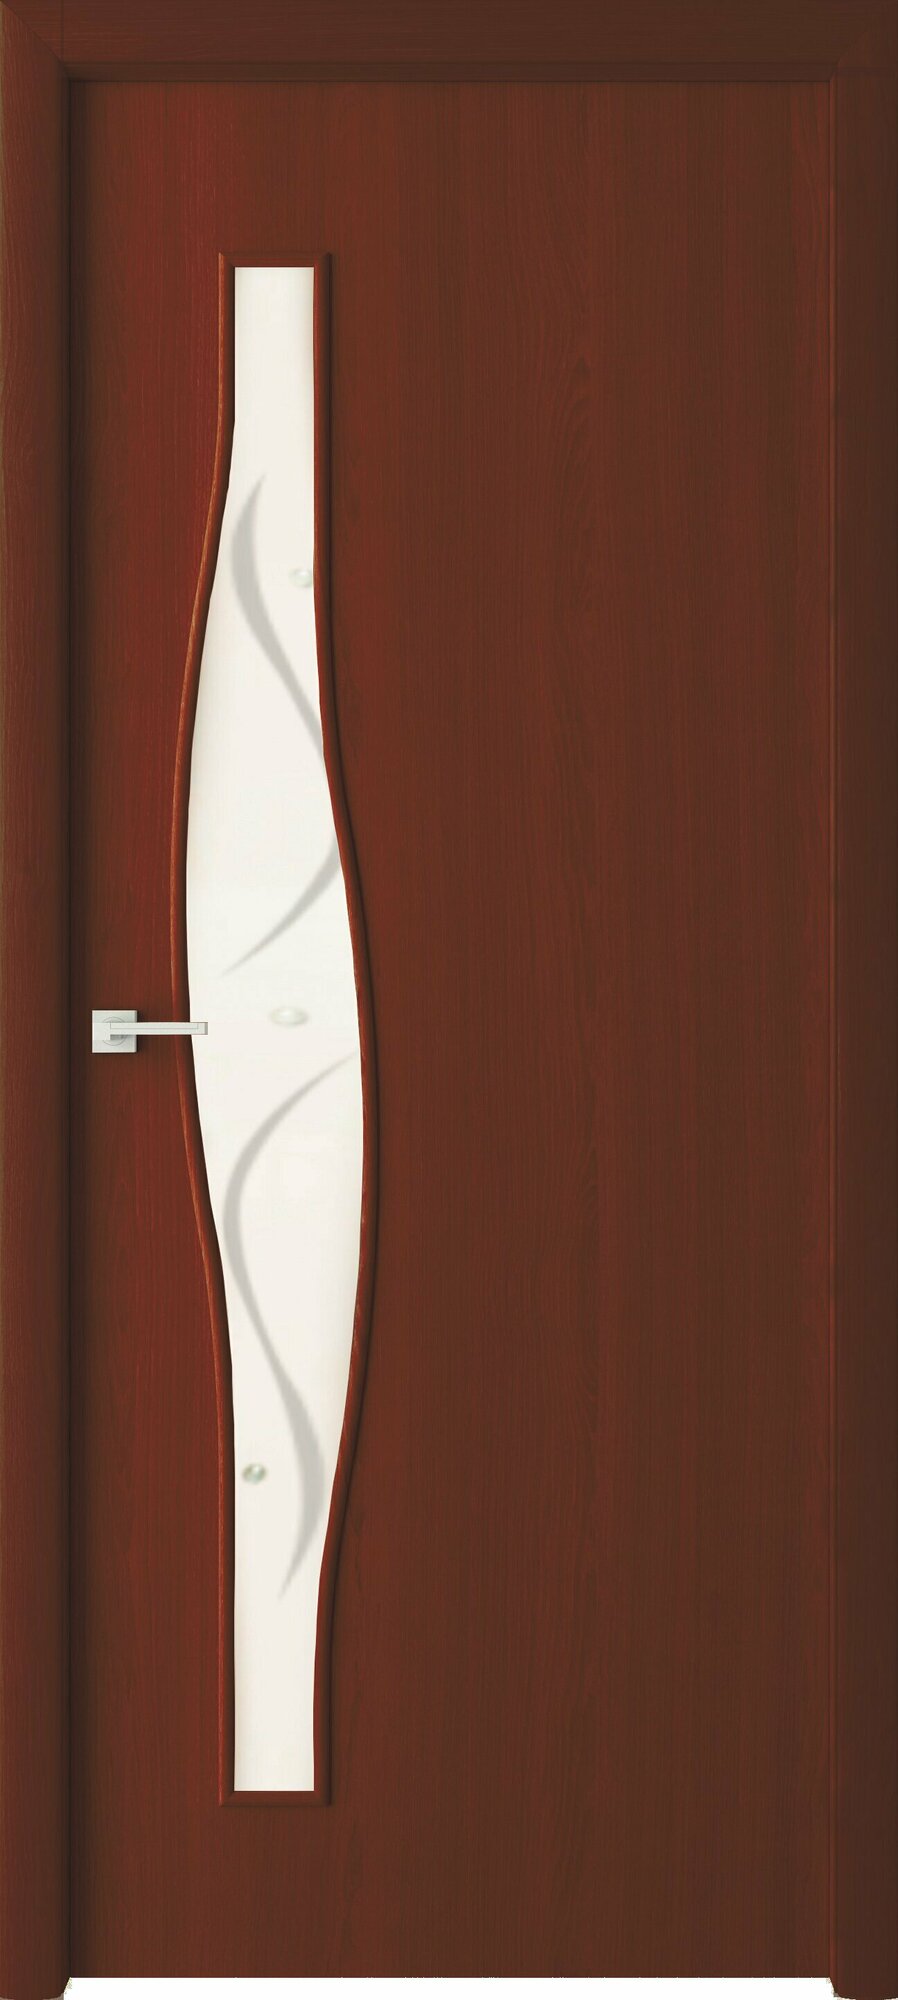 Межкомнатная дверь ВДК Волна ДОФ, Цвет итальянский орех, 800x2000 мм (комплект: полотно + коробочный брус + наличники)